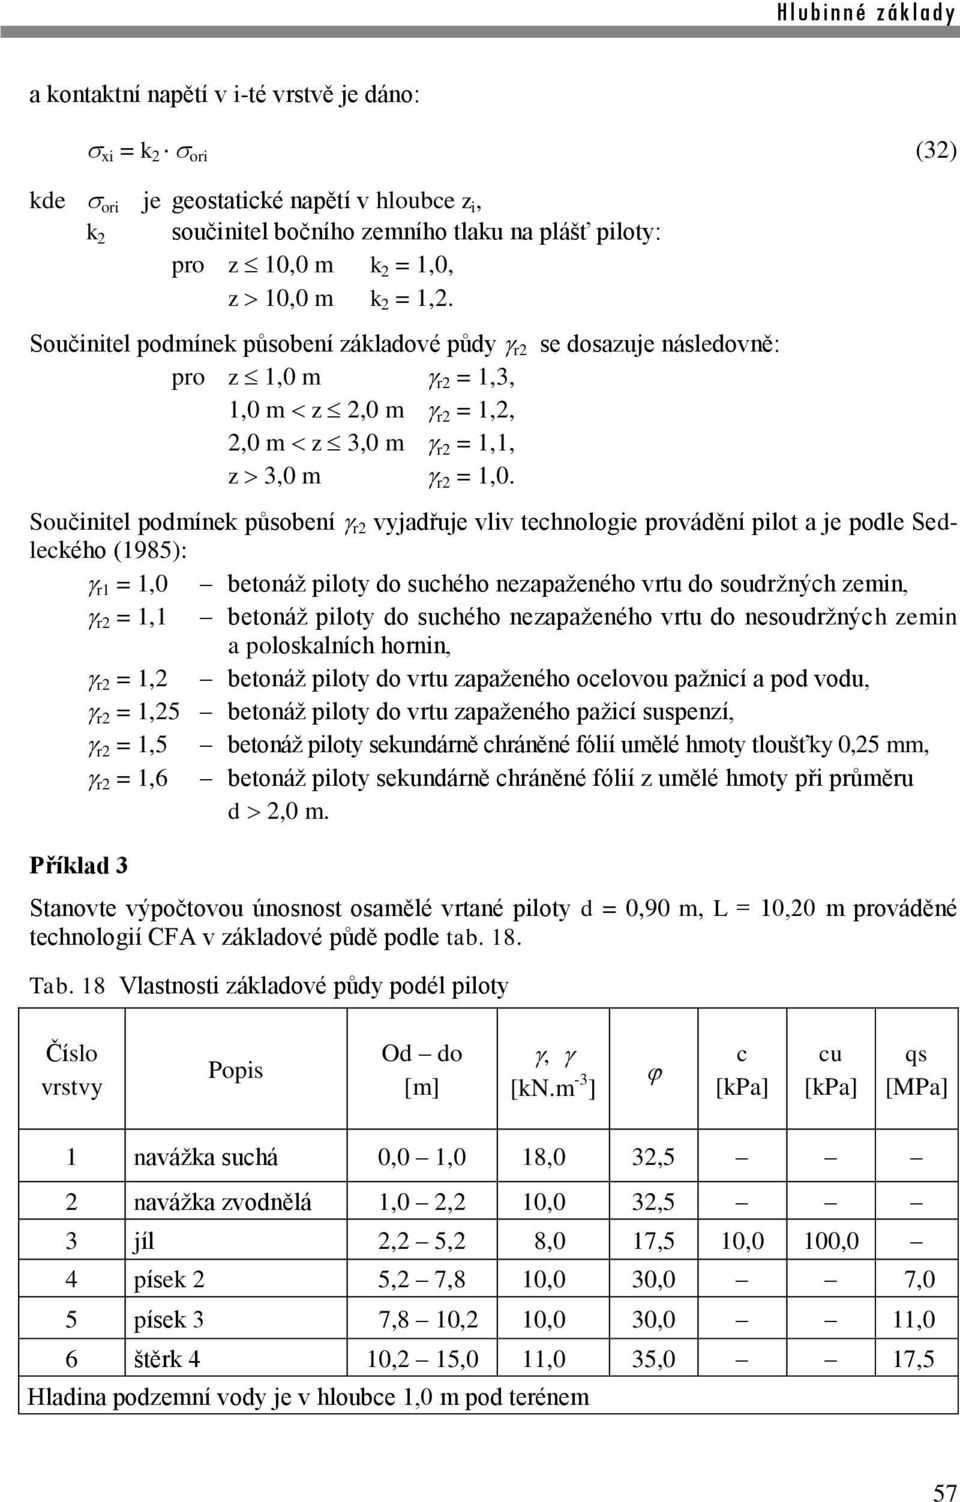 Součinitel podmínek působení r2 vyjadřuje vliv technologie provádění pilot a je podle Sedleckého (1985): r1 = 1,0 betonáž piloty do suchého nezapaženého vrtu do soudržných zemin, r2 = 1,1 betonáž